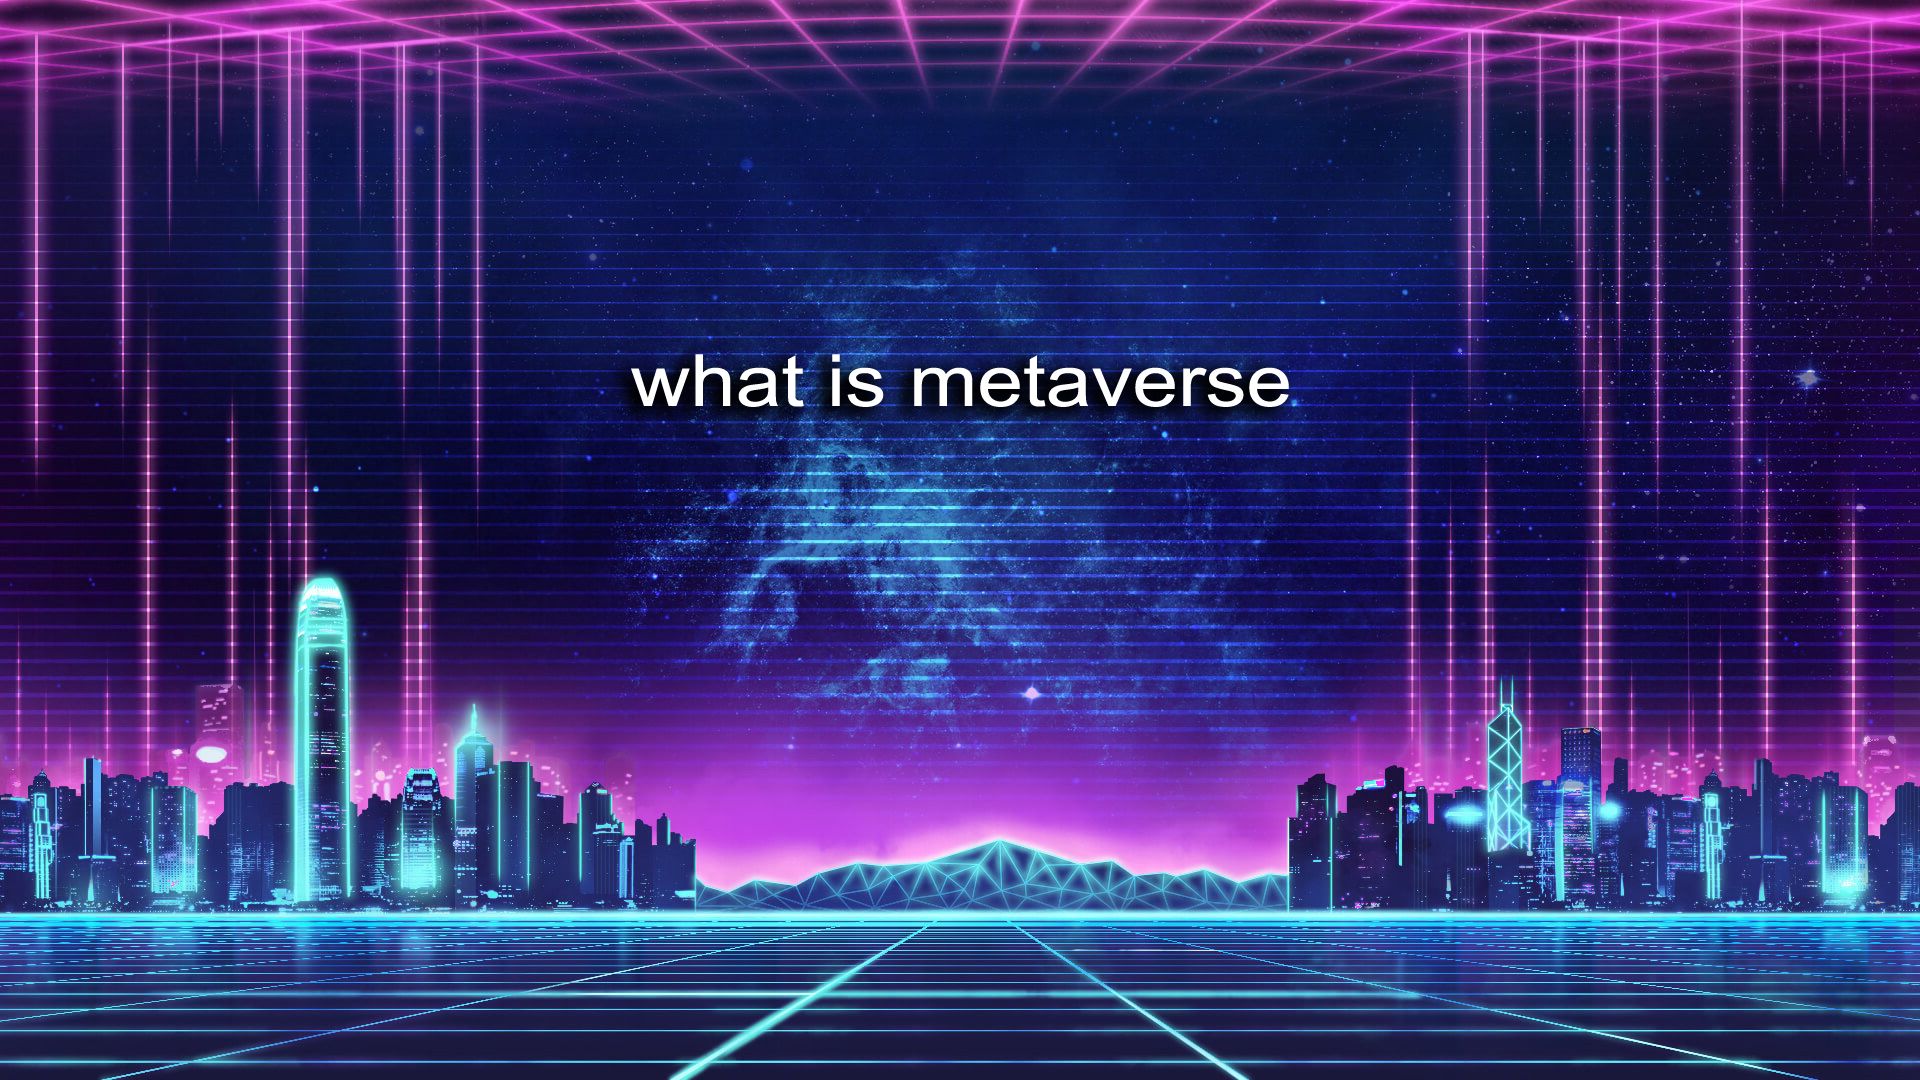 这是一张展现赛博朋克风格的虚拟城市图，图中有未来感建筑，紫色调，上方有“what is metaverse”字样。